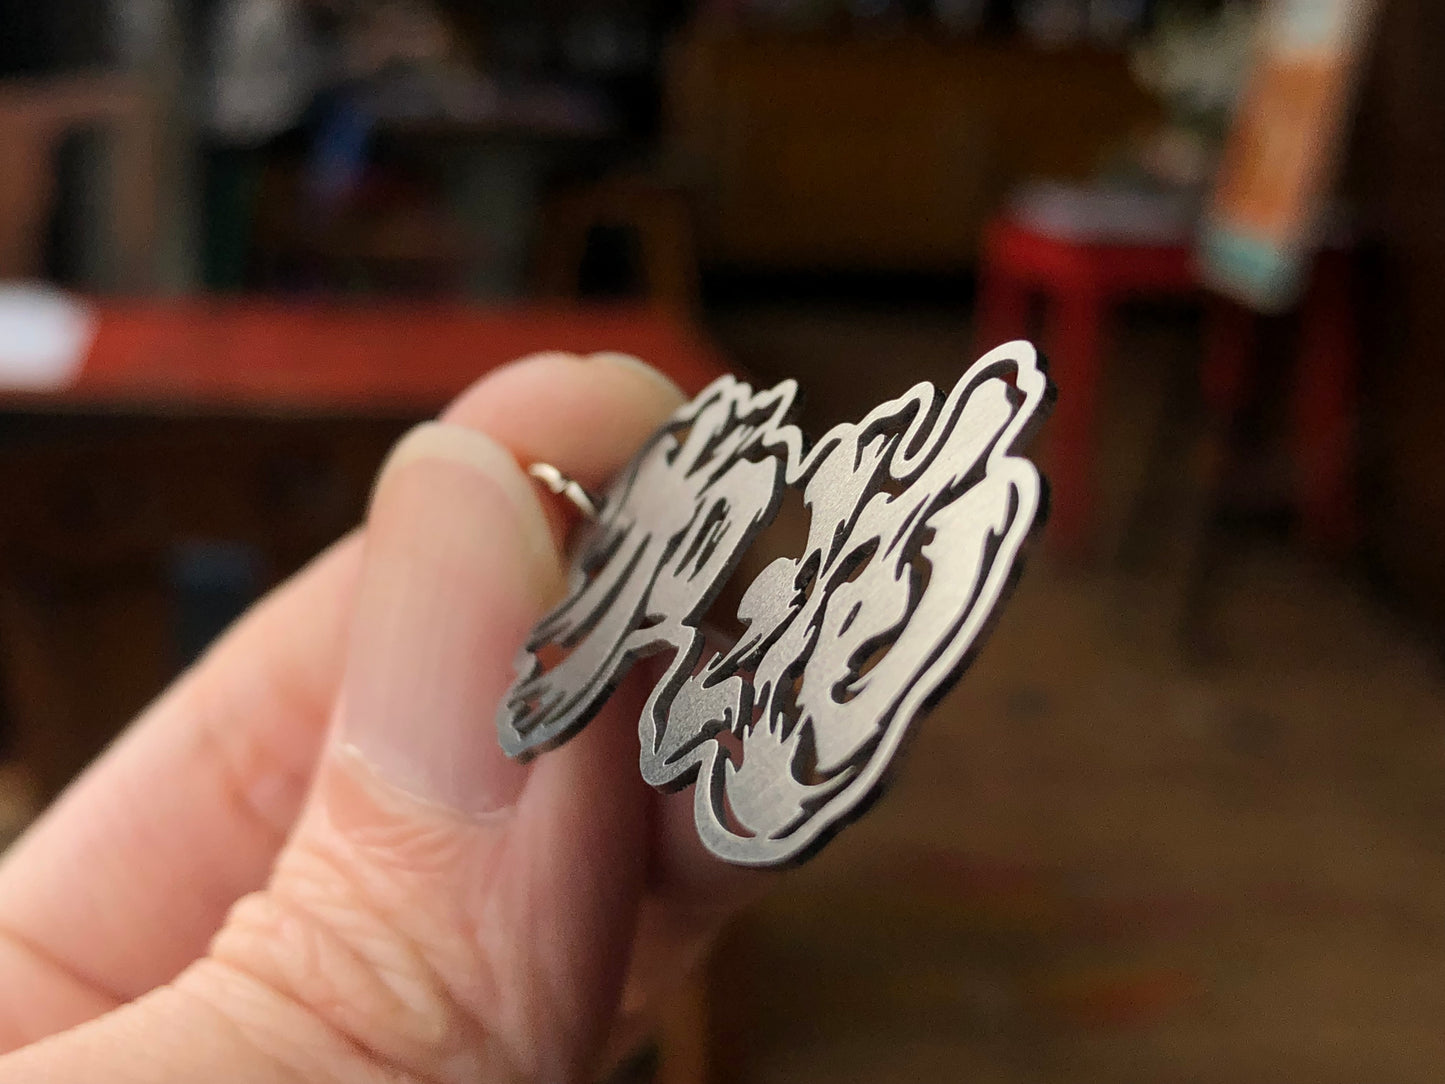 為香港人加油不銹鋼及黃銅匙扣 Stainless steel keychain 🇬🇧 Made in Britain✨New Arrival✨